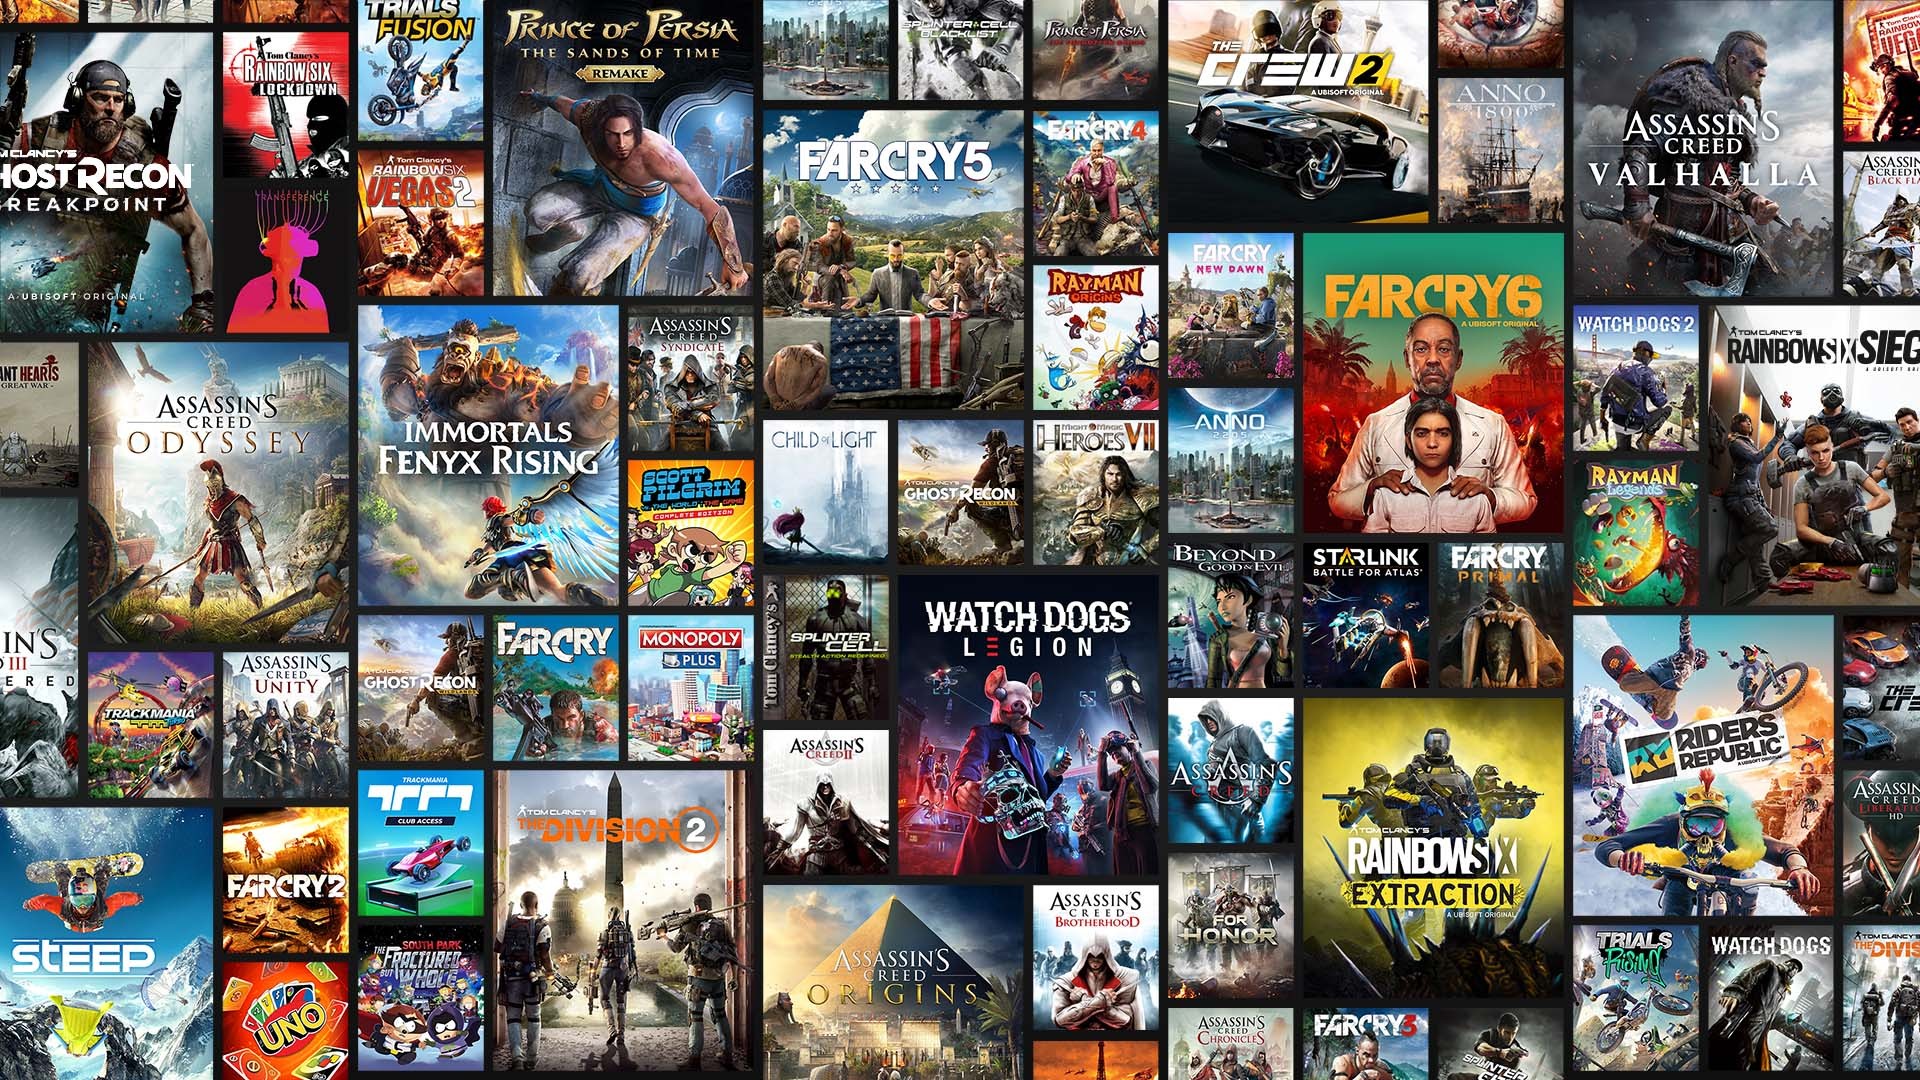 Catálogo PlayStation Plus e catálogo de jogos clássicos para outubro de  2022 anunciados